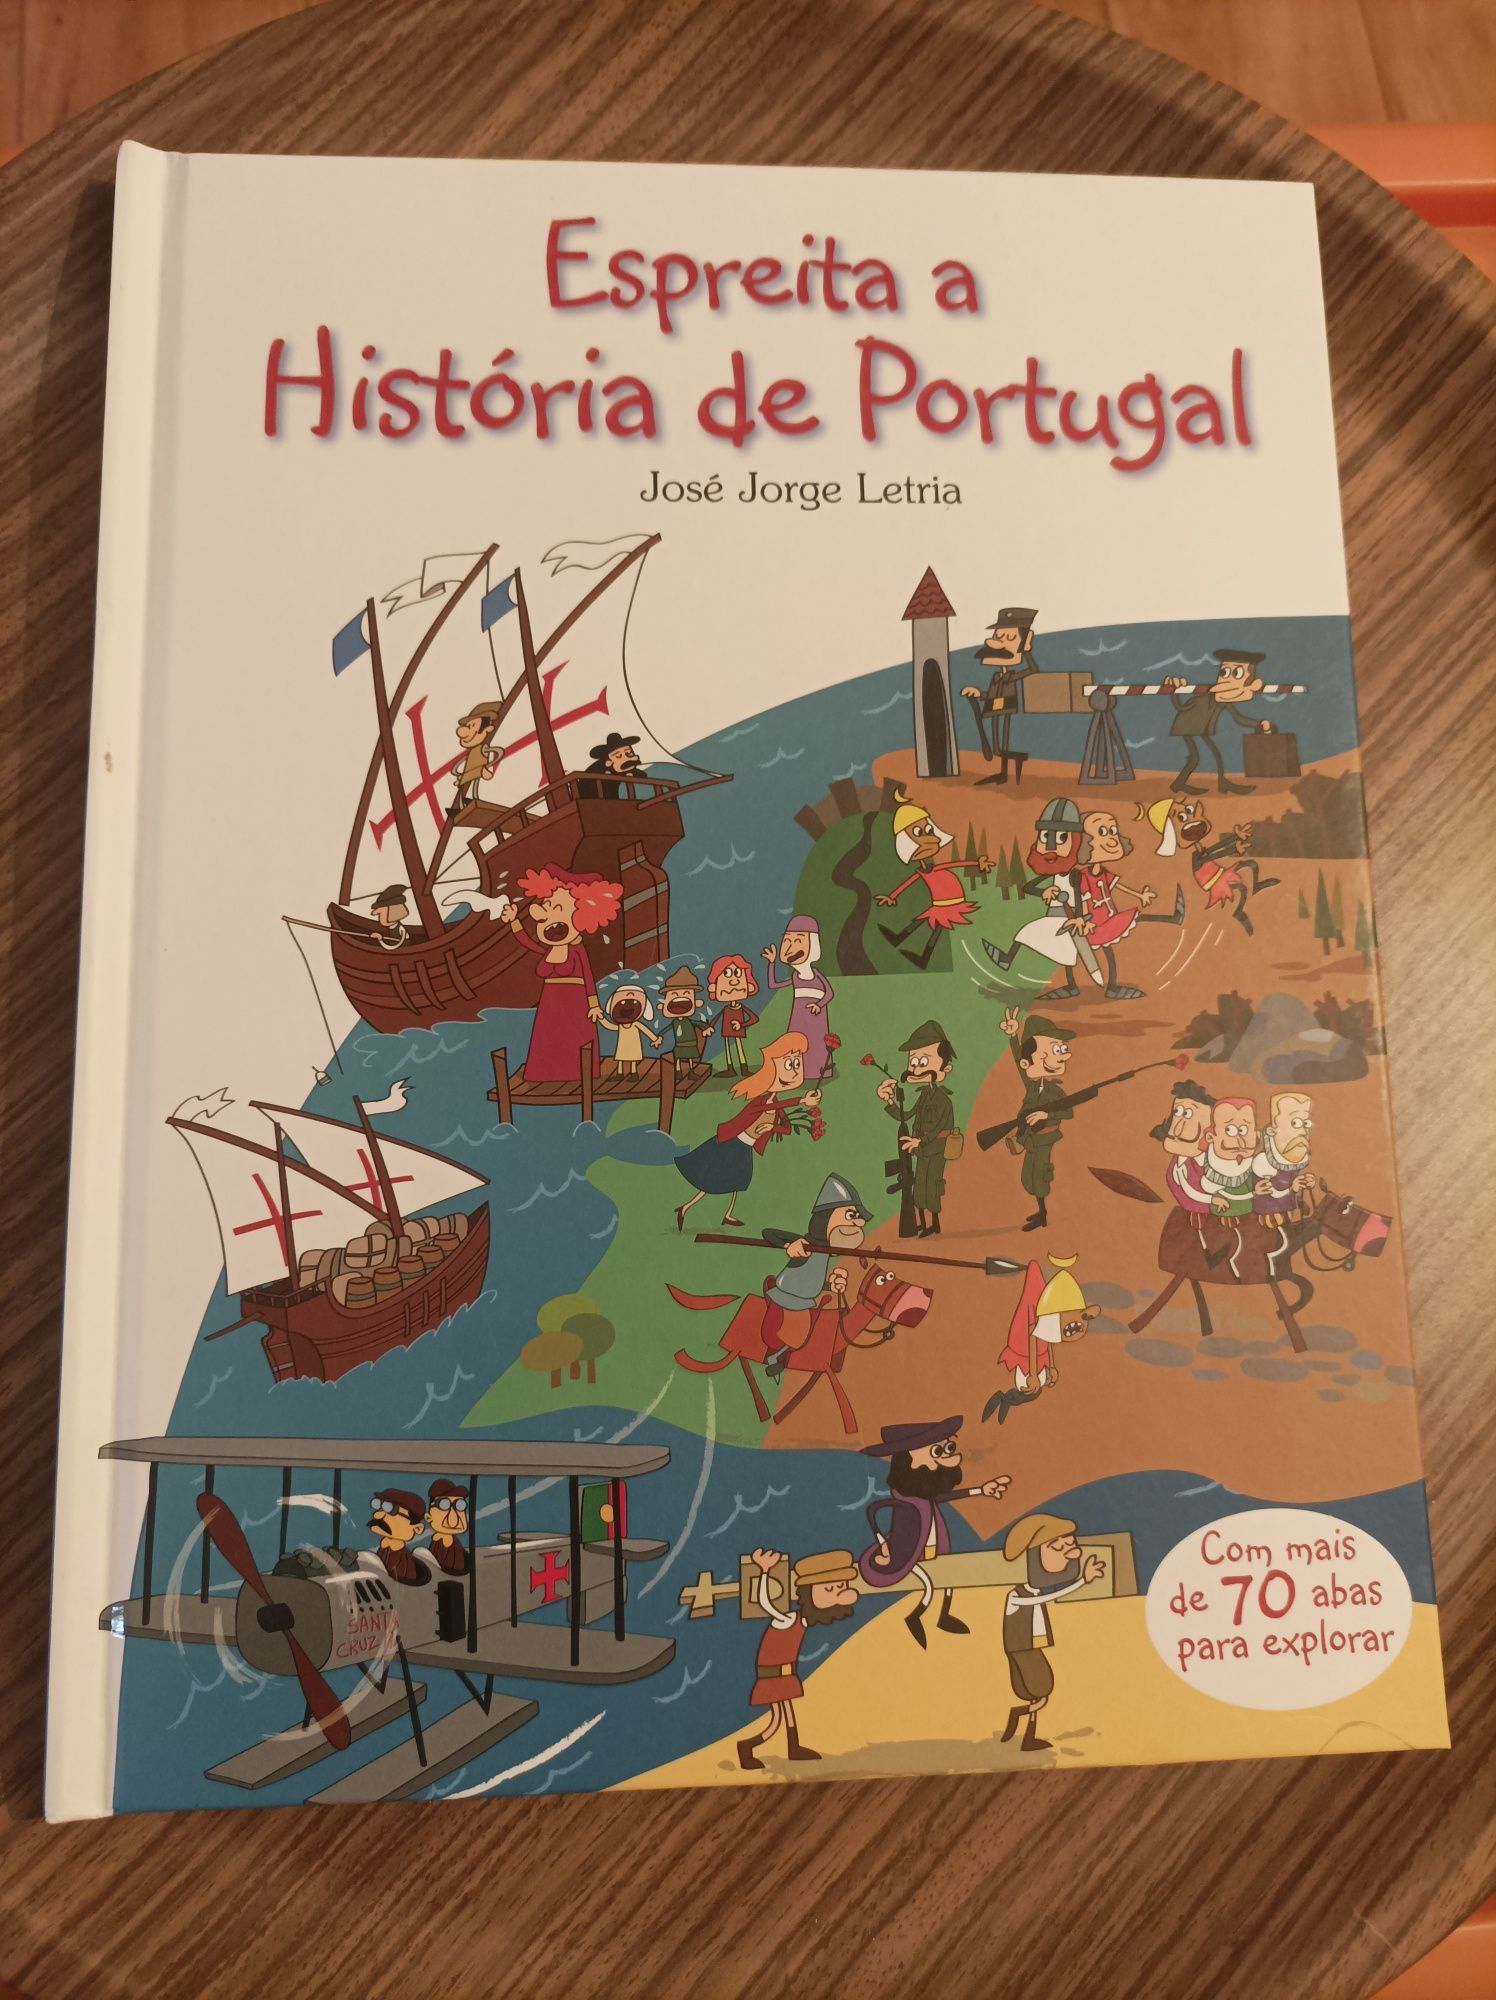 Livro "Espreita a História de Portugal"